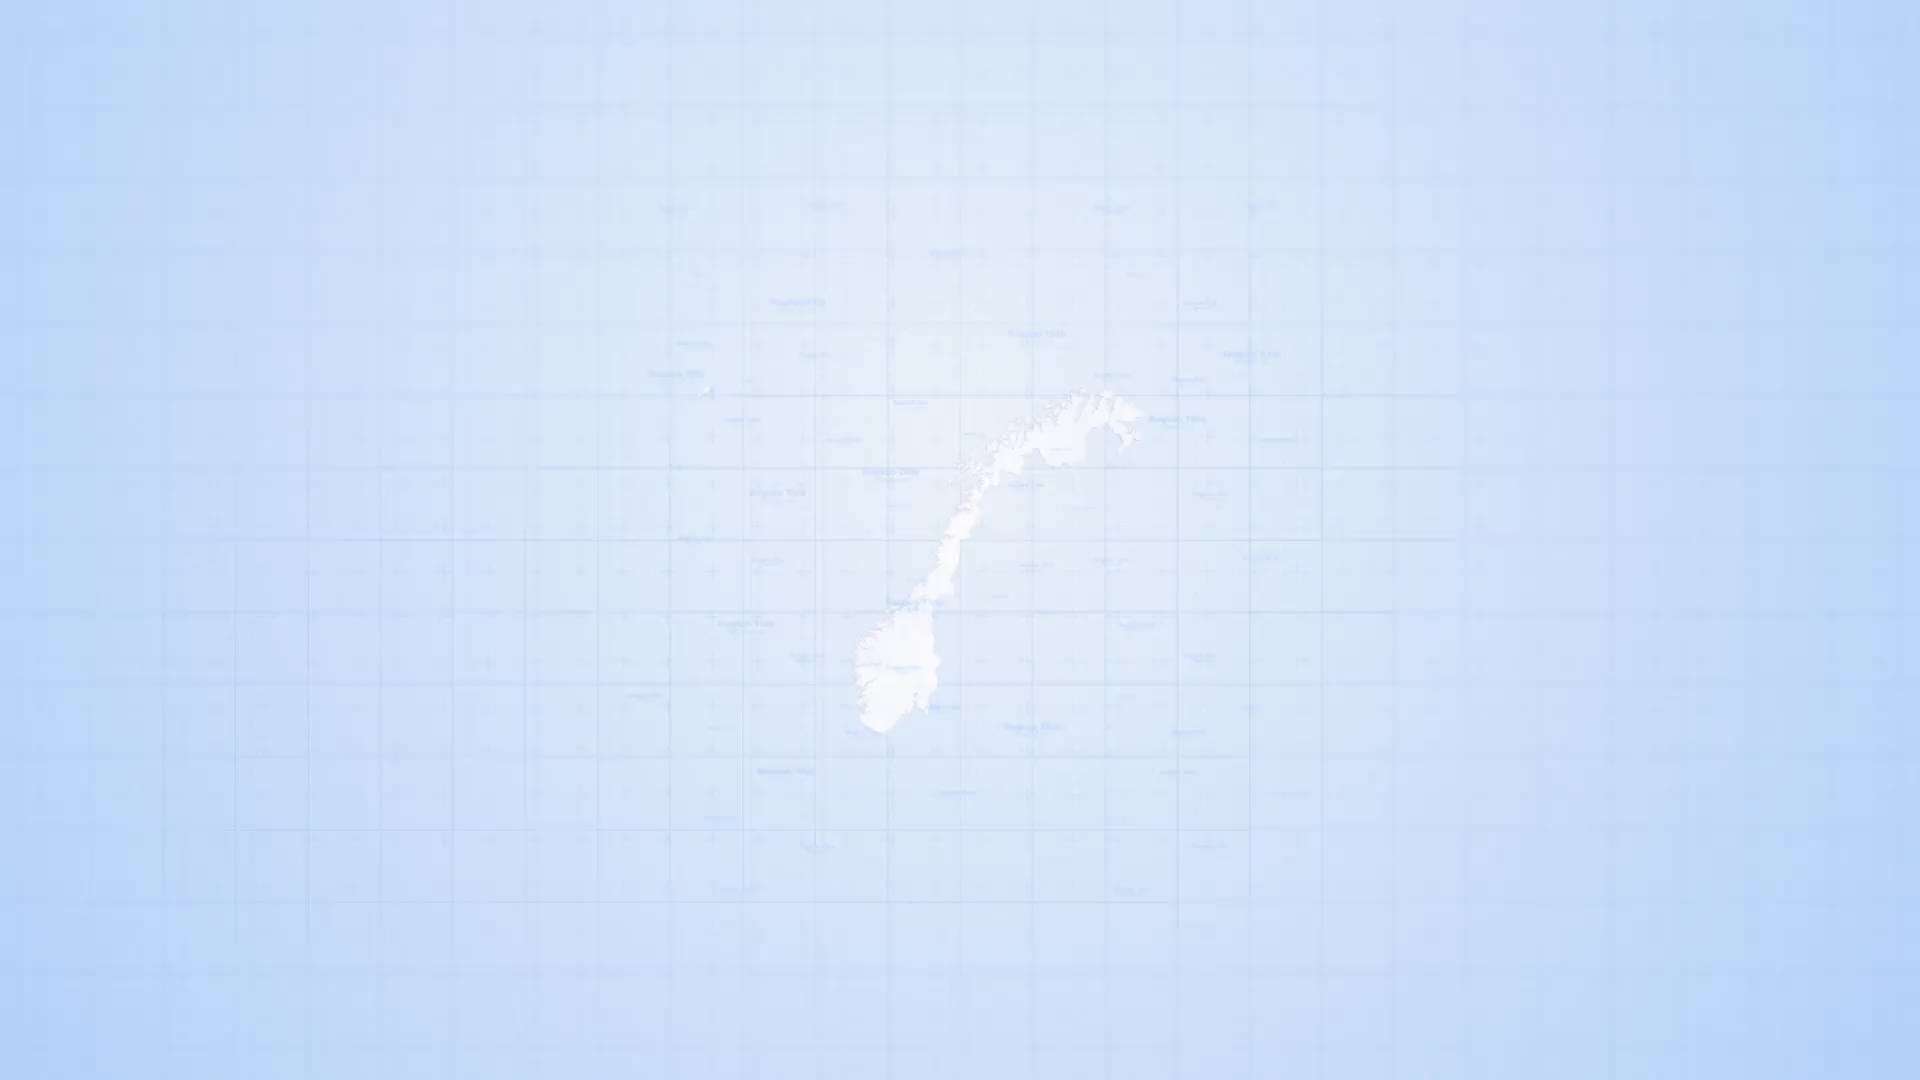 AE模板 | 挪威王国旅游地图路线标记工具包动态动画展示